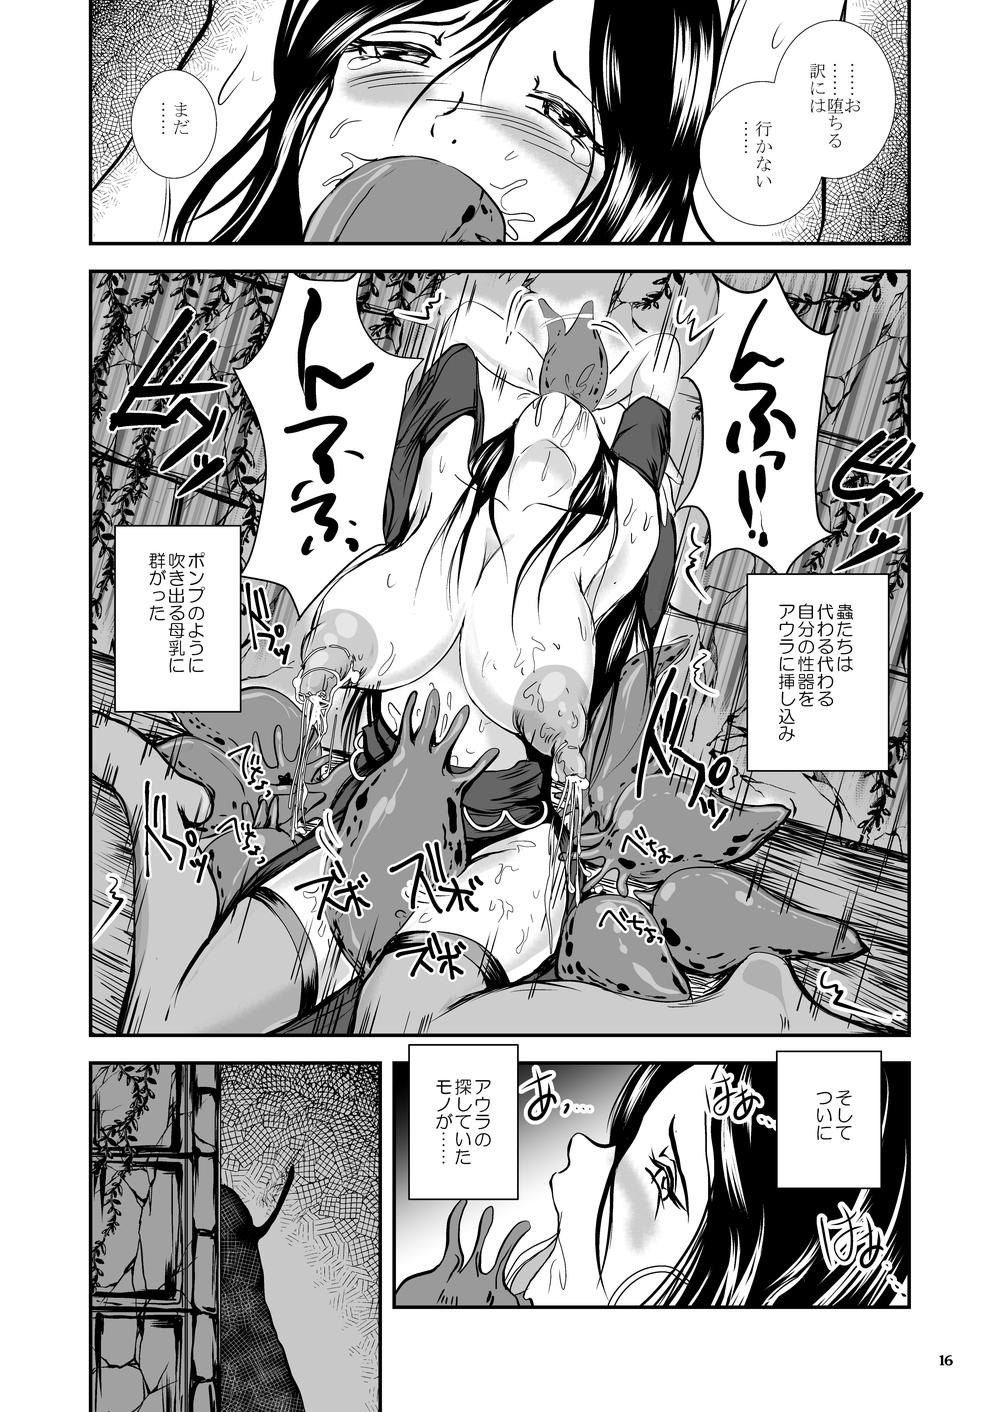 Oonamekuji to Kurokami no Mahoutsukai - Parasitized Giant Slugs V.S. Sorceress of the Black Hair as Aura 62